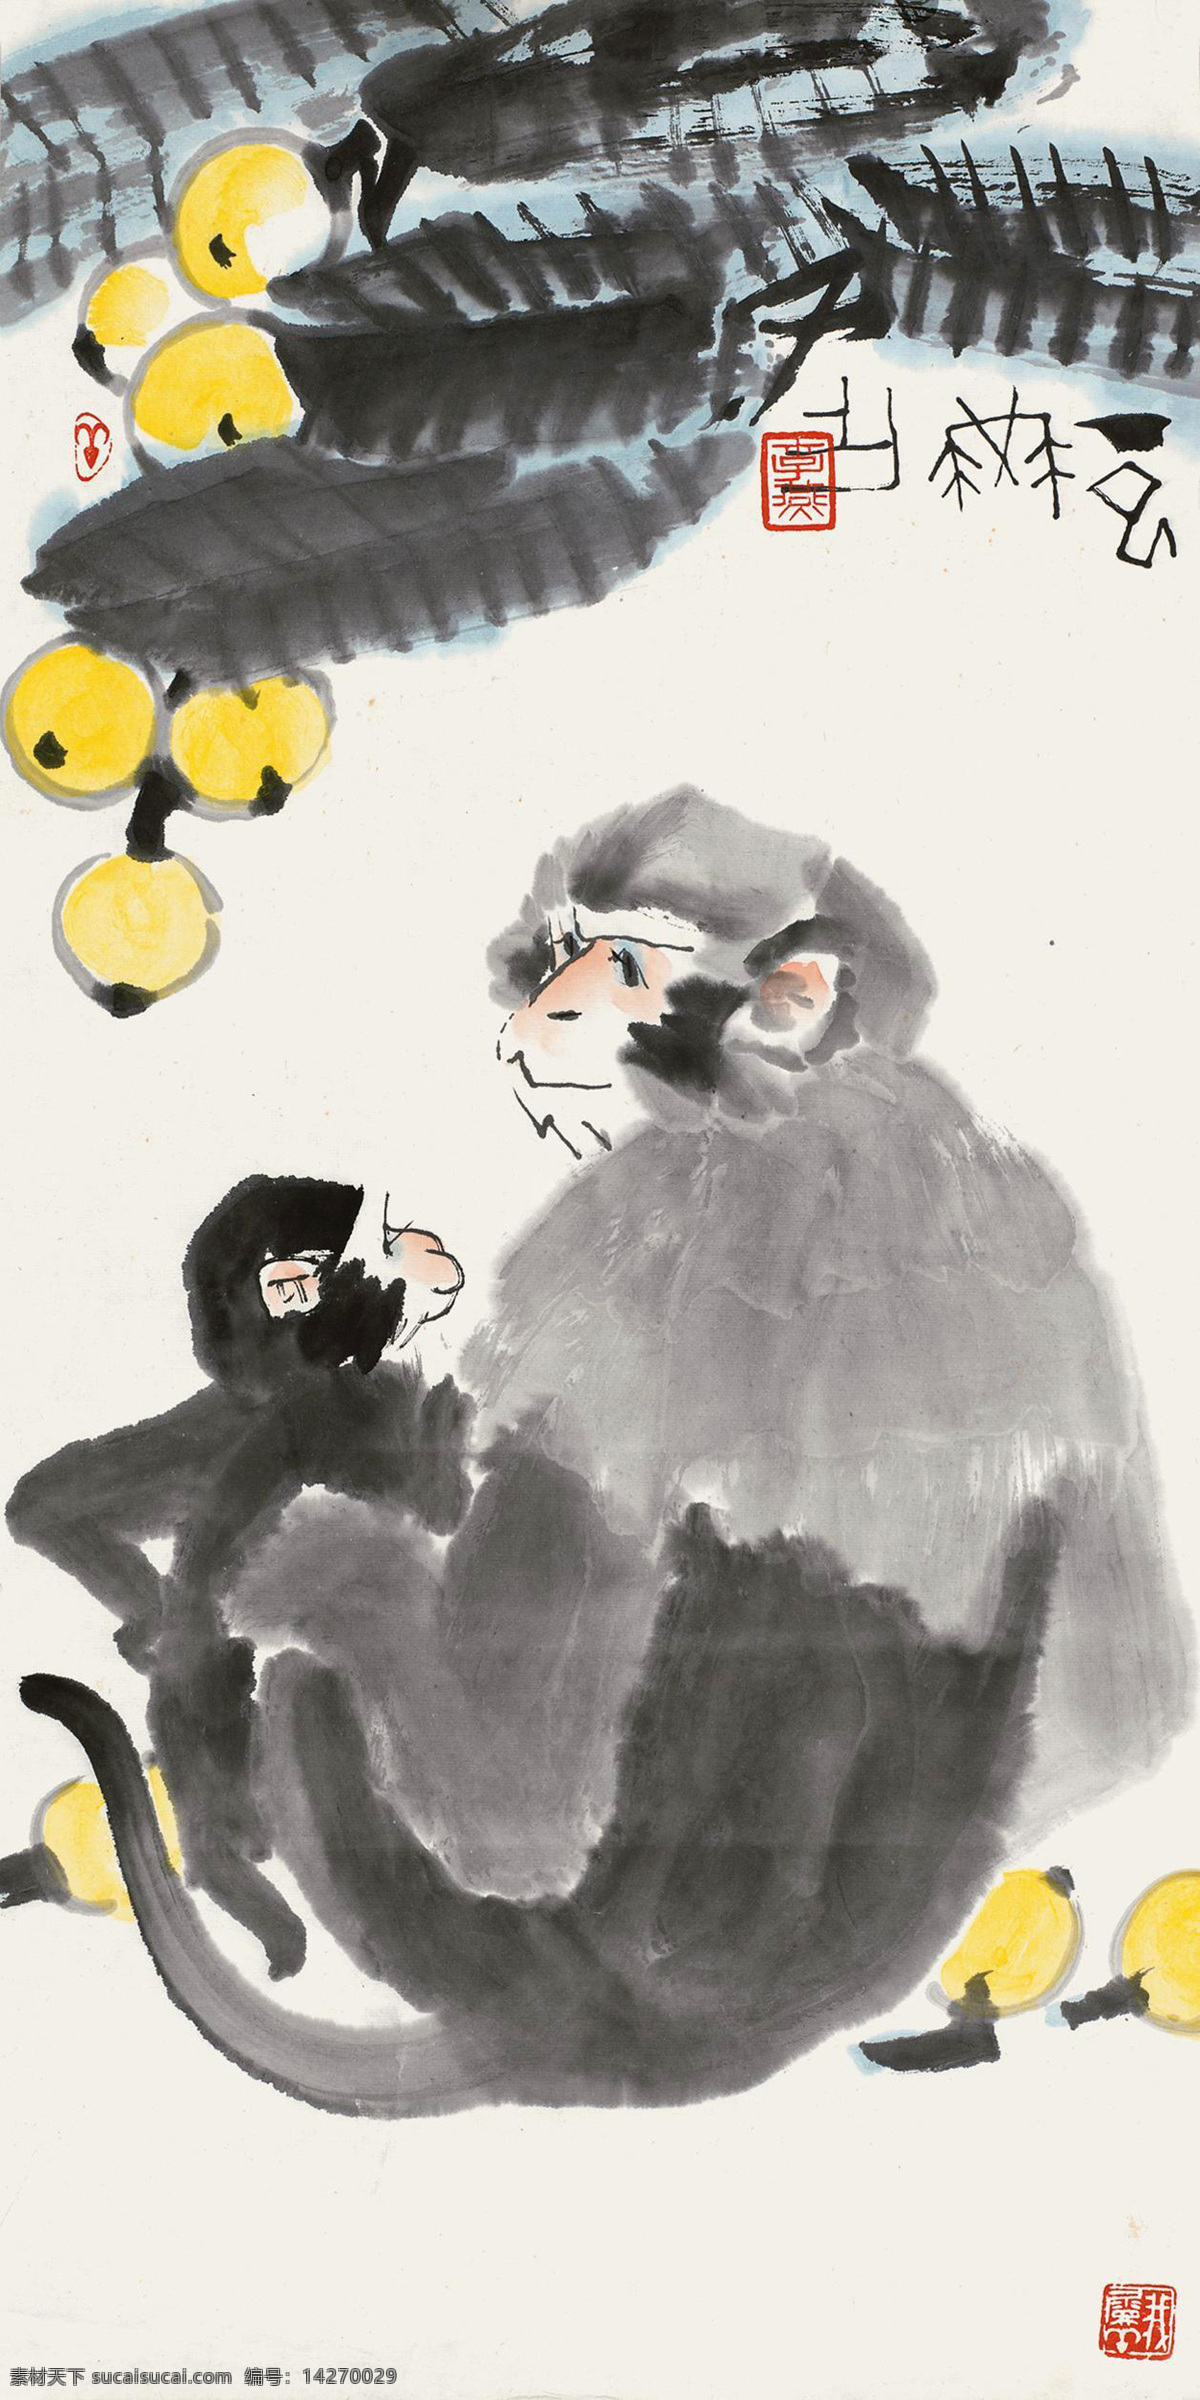 猴子 李燕 国画 猴 申猴 猕猴 猴乐 小猴子 寿猴 猴戏 猴趣 枇杷 水墨画 中国画 绘画书法 文化艺术 国画李燕